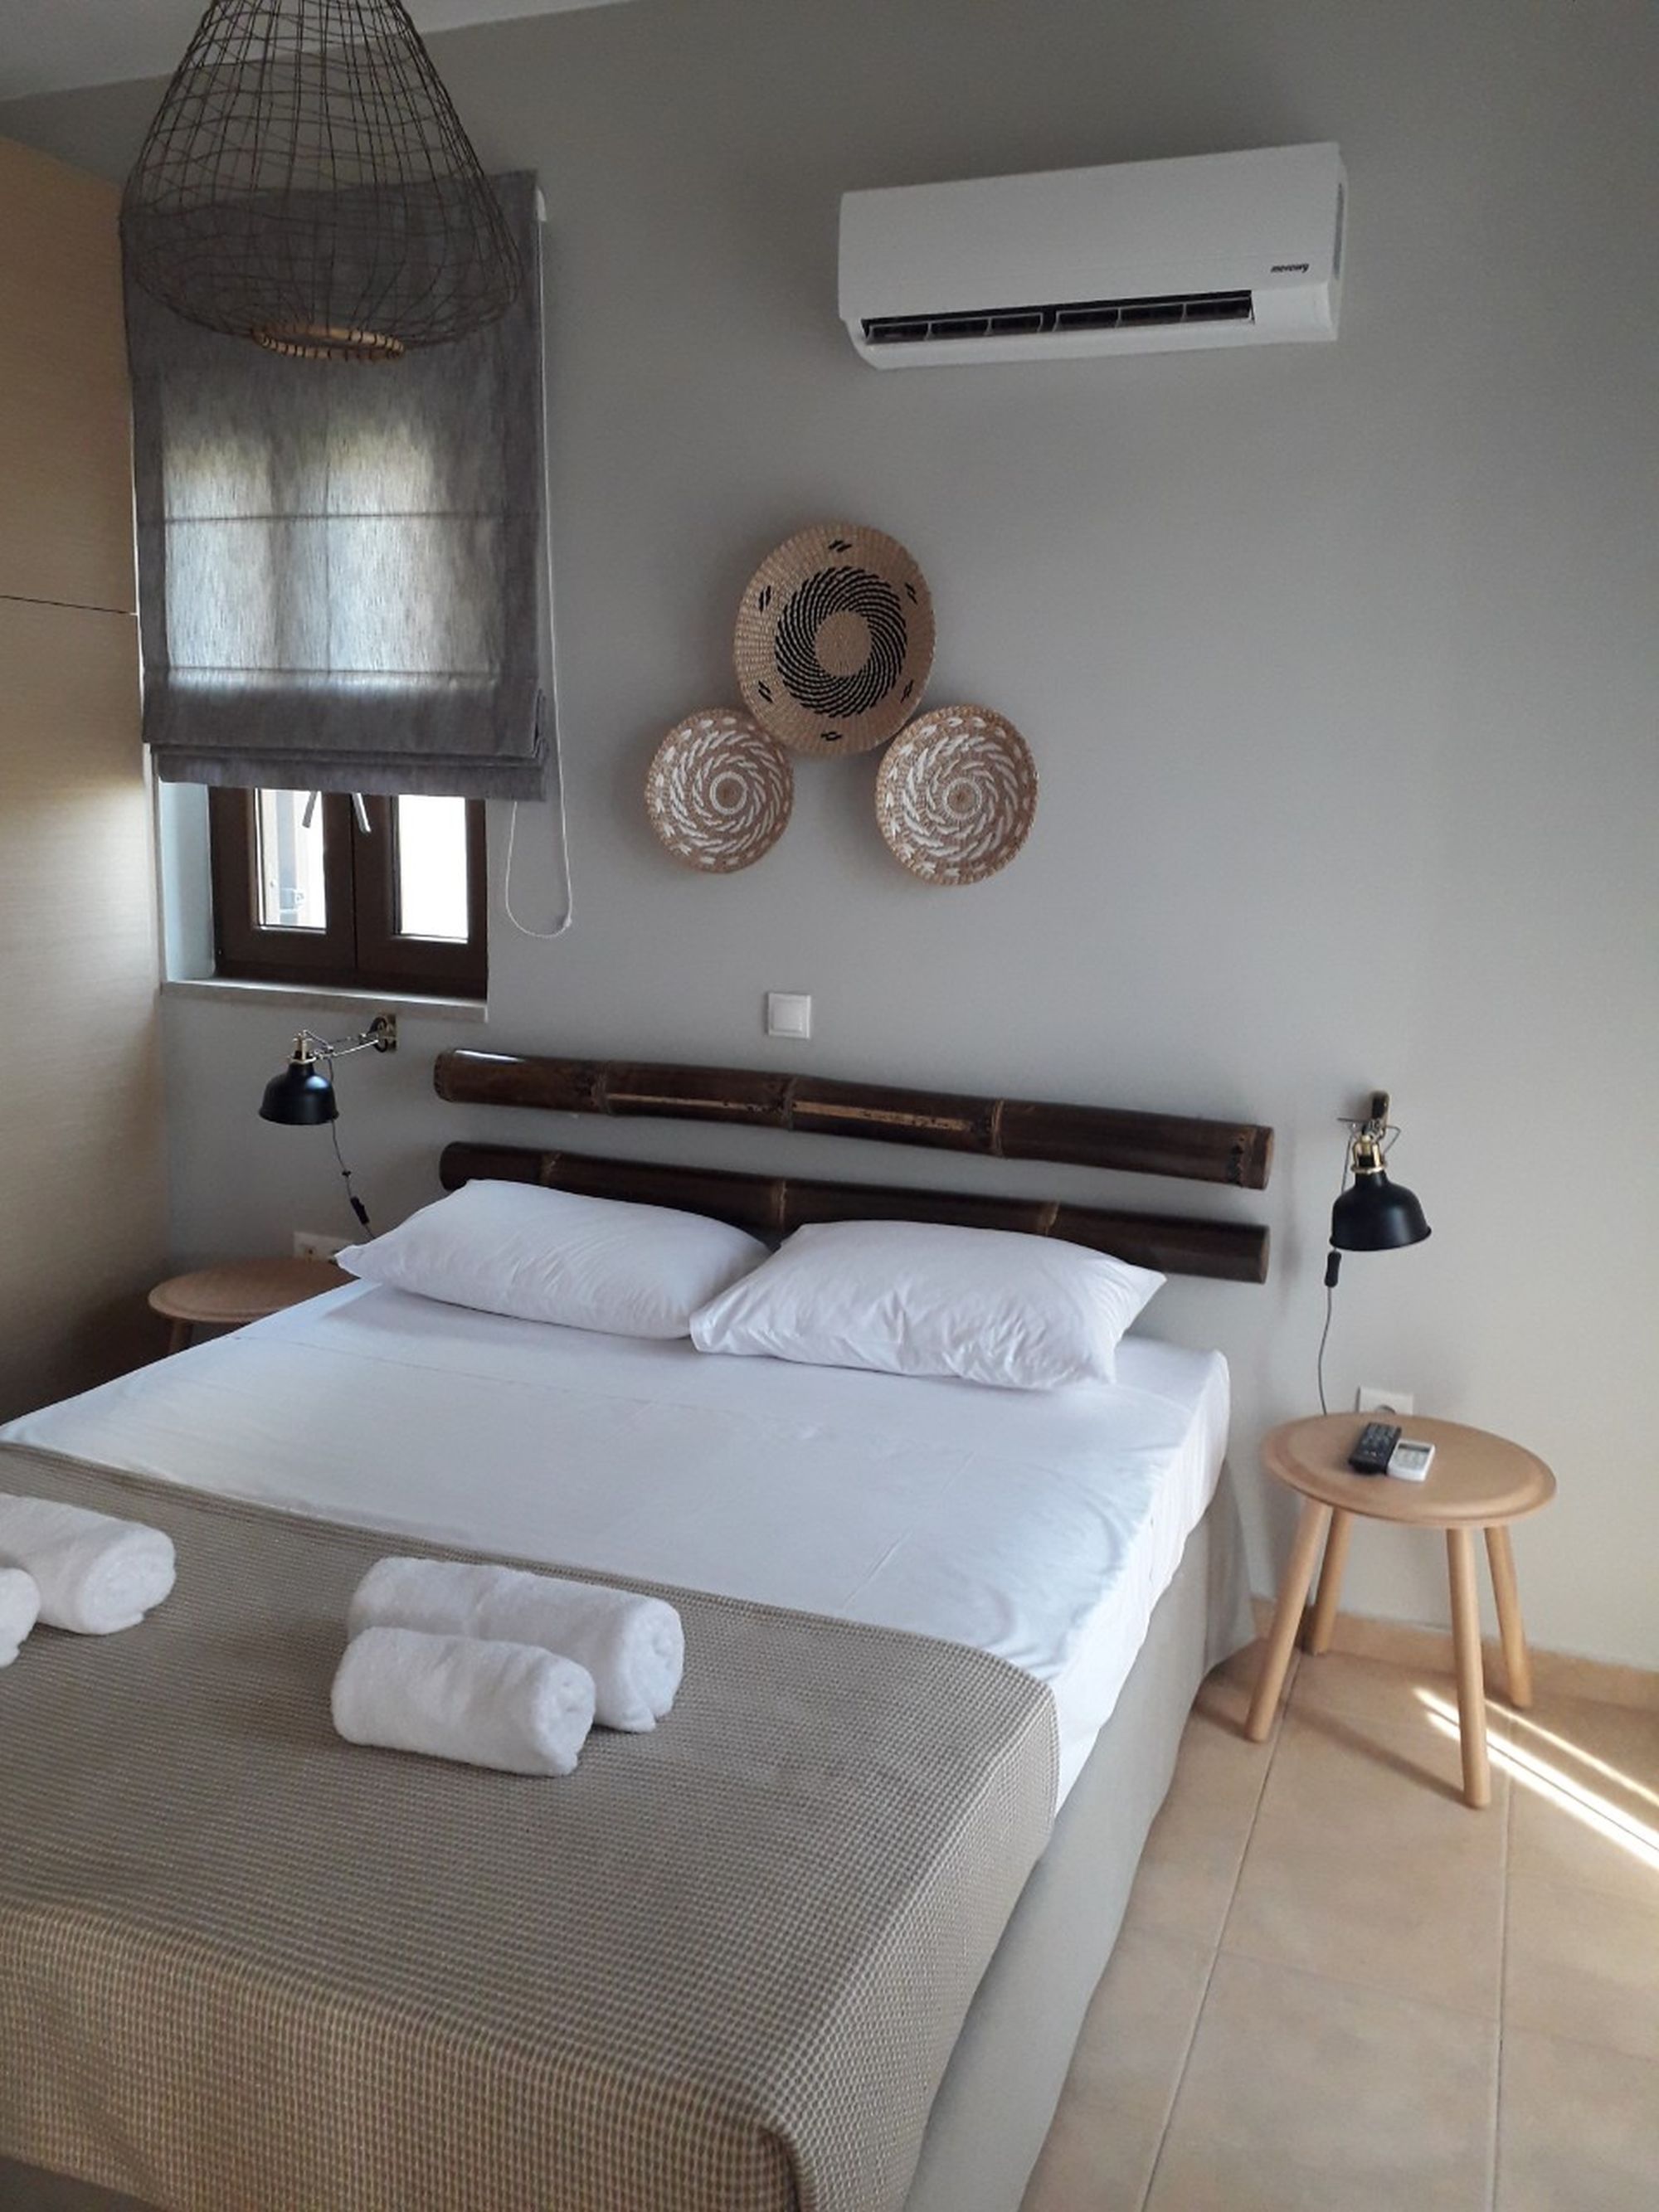 Κλιματιζόμενο υπνοδωμάτιο με διπλό κρεβάτι διακοσμημένο με ιστούς μπαμπού πάνω από το κρεβάτι και τρία στρογγυλά ψάθινα διακοσμητικά στον τοίχο.